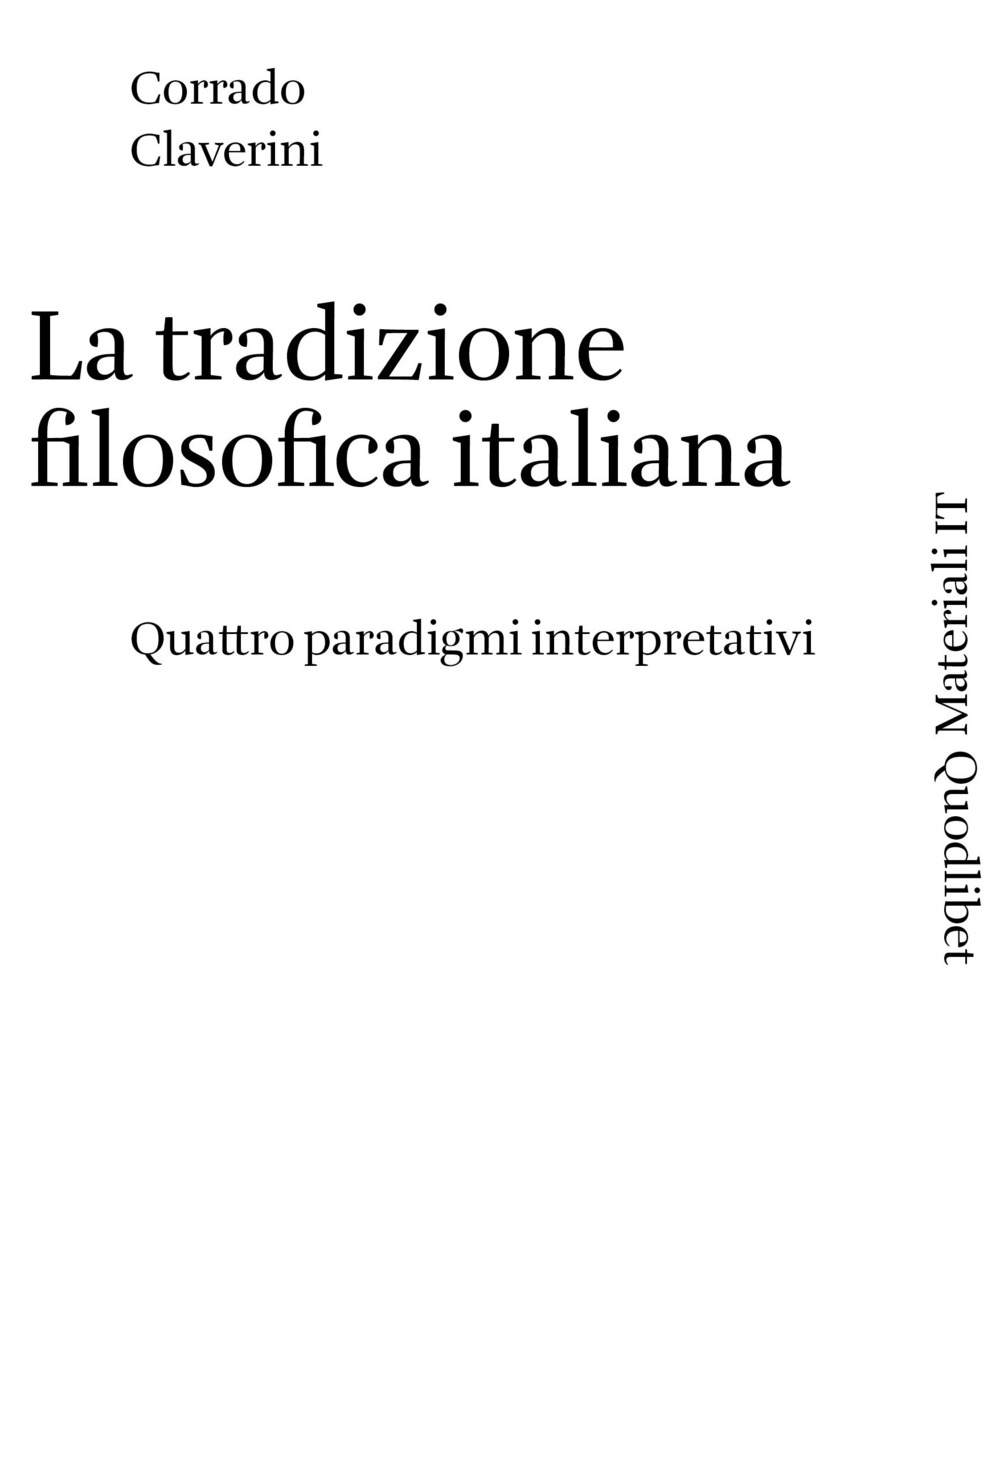 TRADIZIONE FILOSOFICA ITALIANA. QUATTRO PARADIGMI INTERPRETATIVI (LA) - Claverini Corrado - 9788822906366